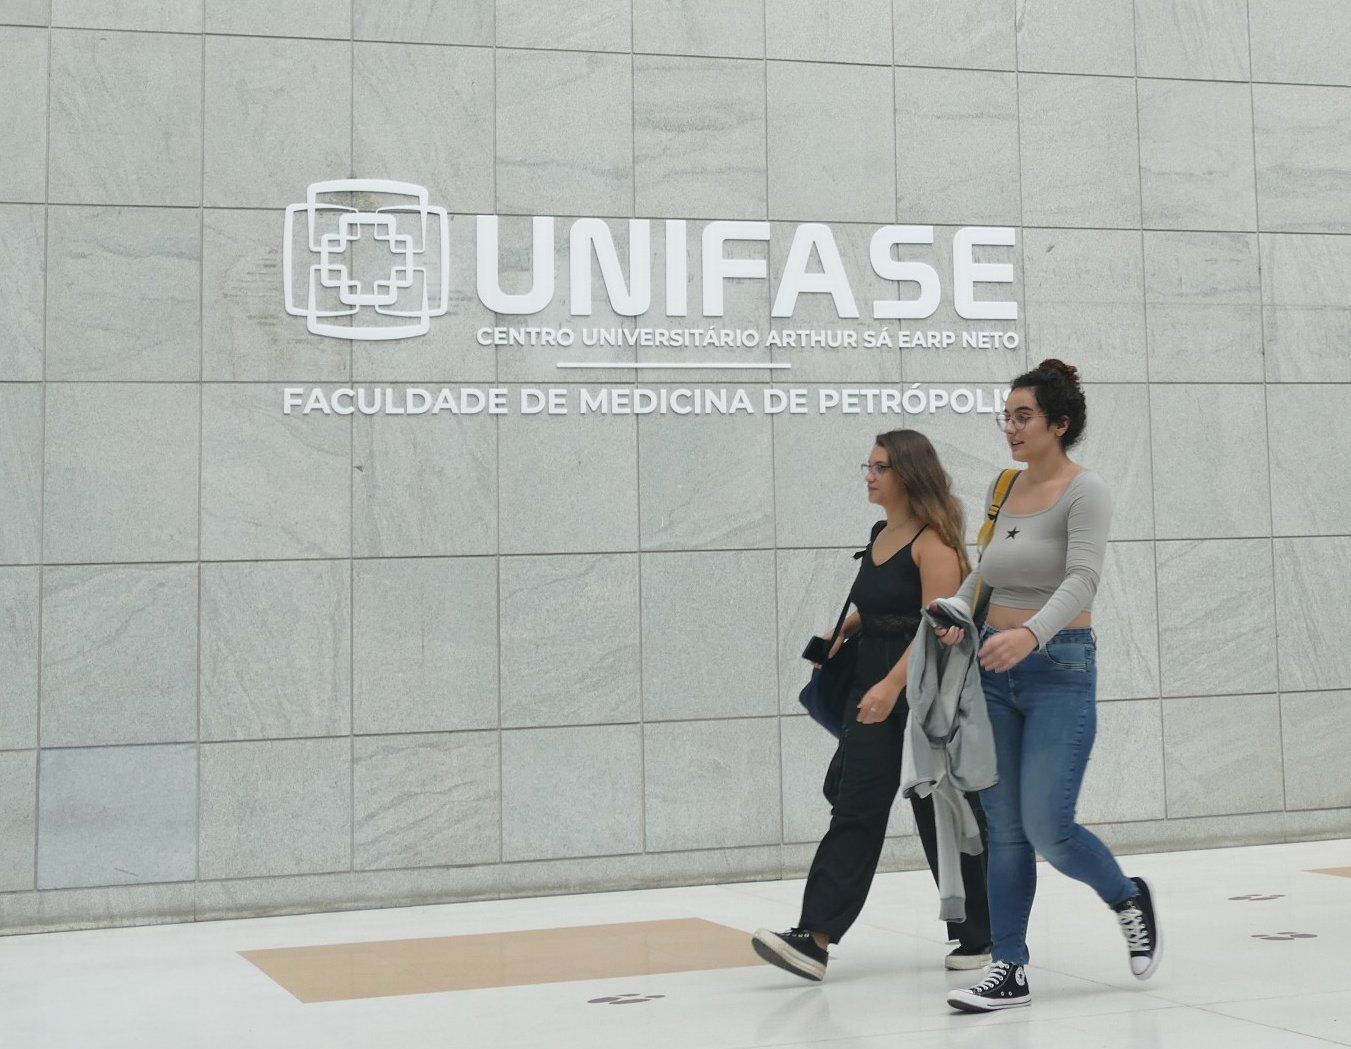 Avaliação do MEC coloca a UNIFASE entre os 10 melhores centros universitários do país